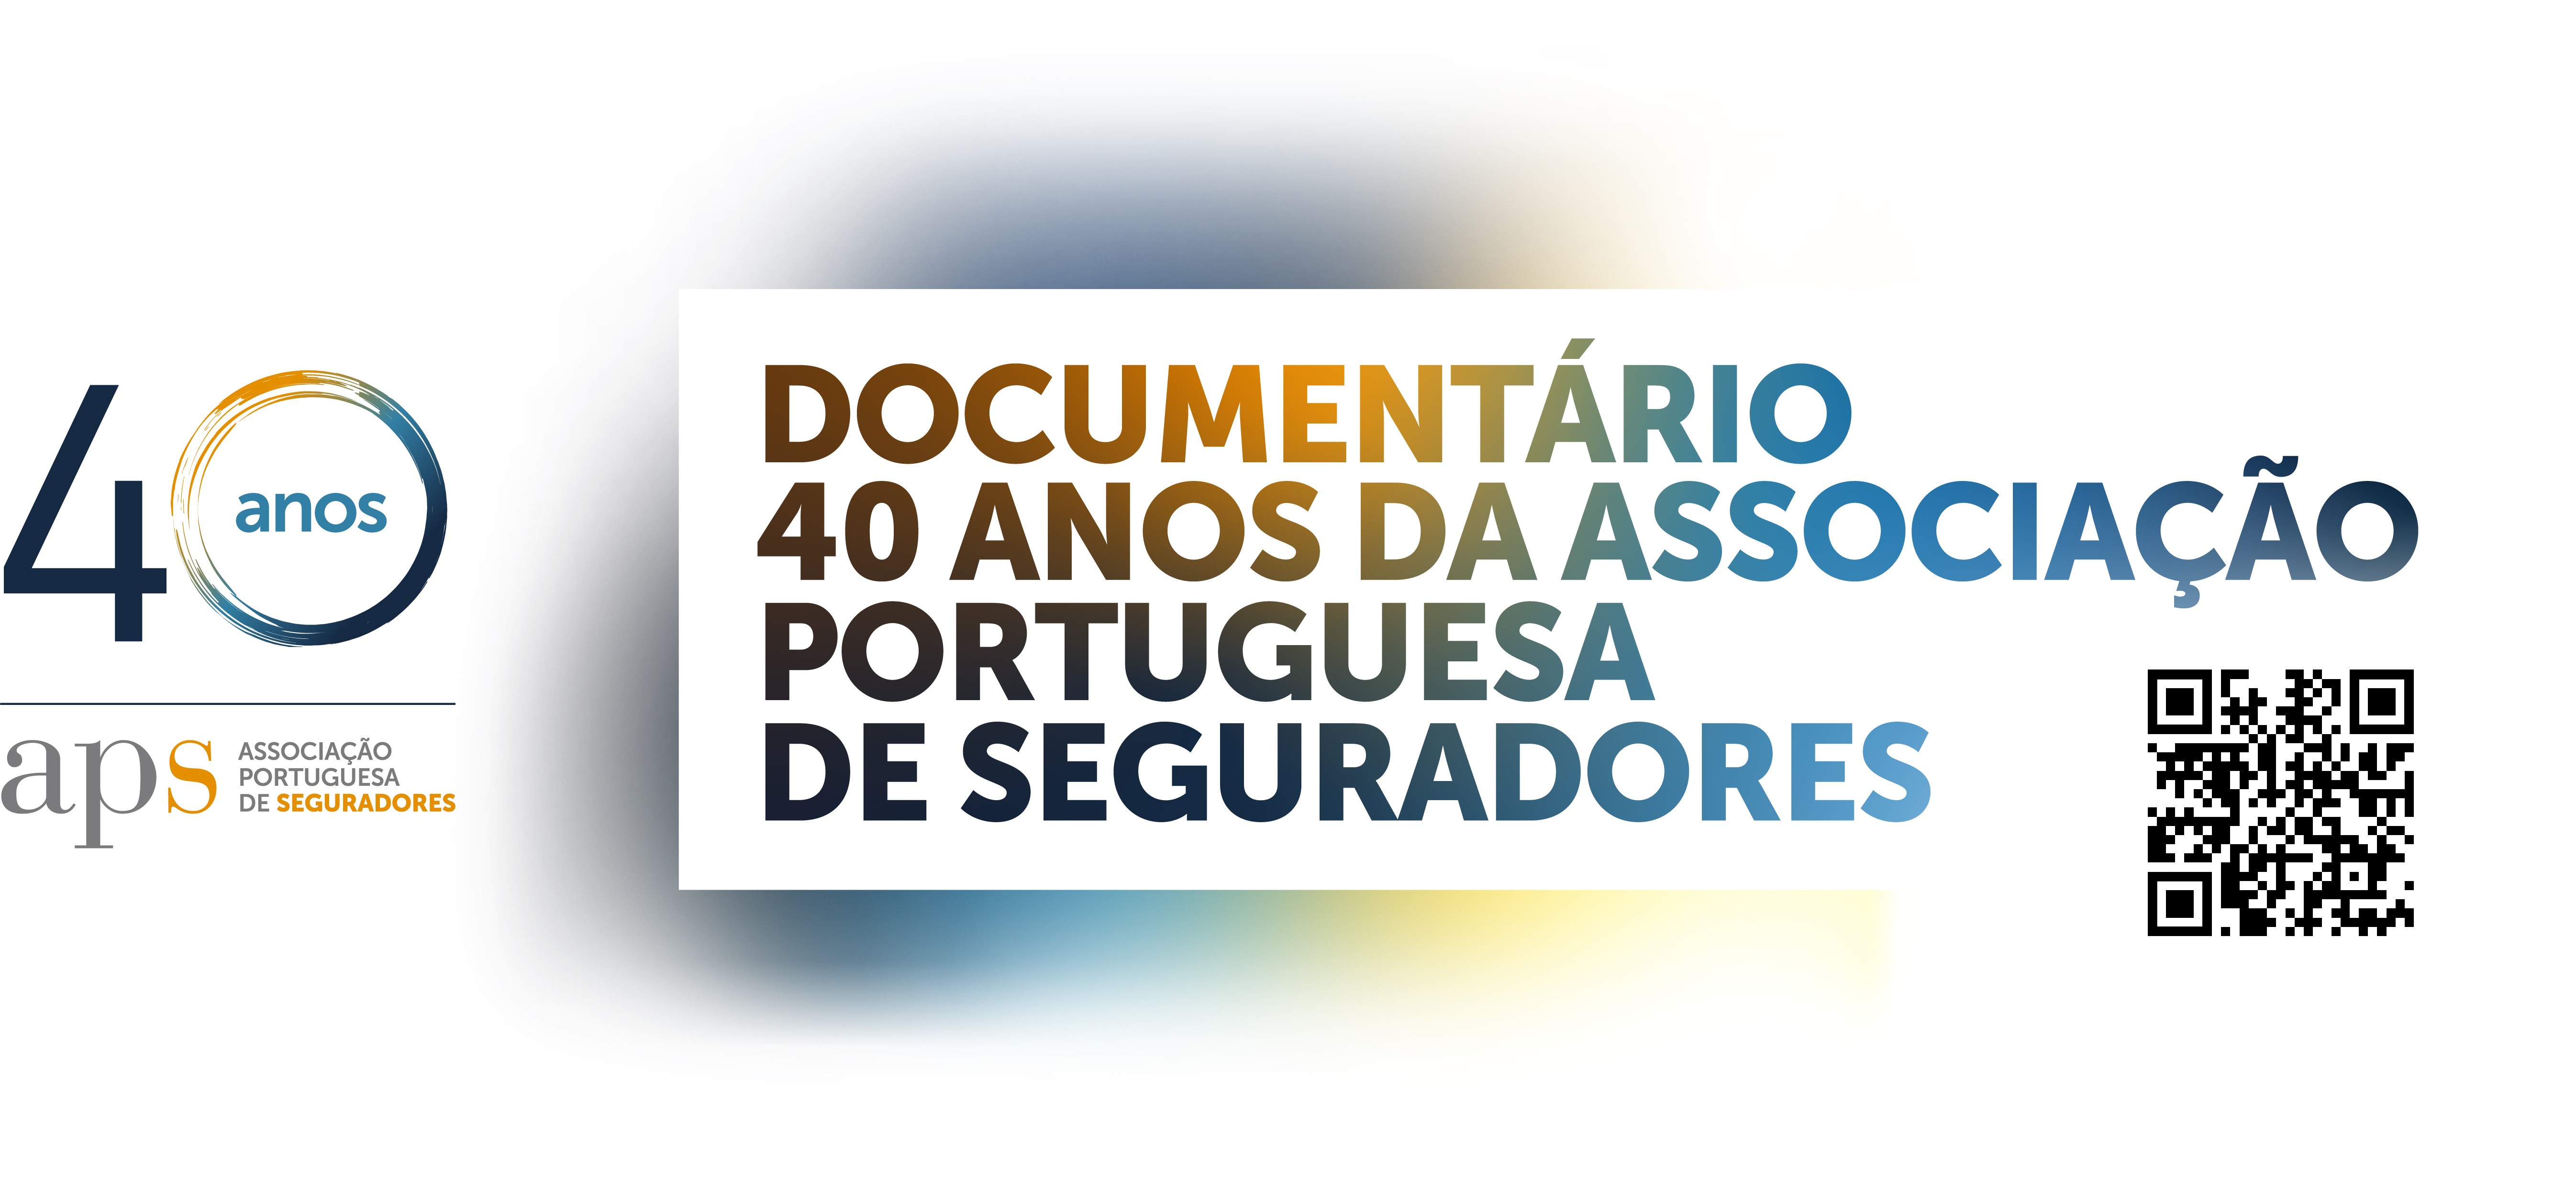 Banner documentario 40 anos_novo